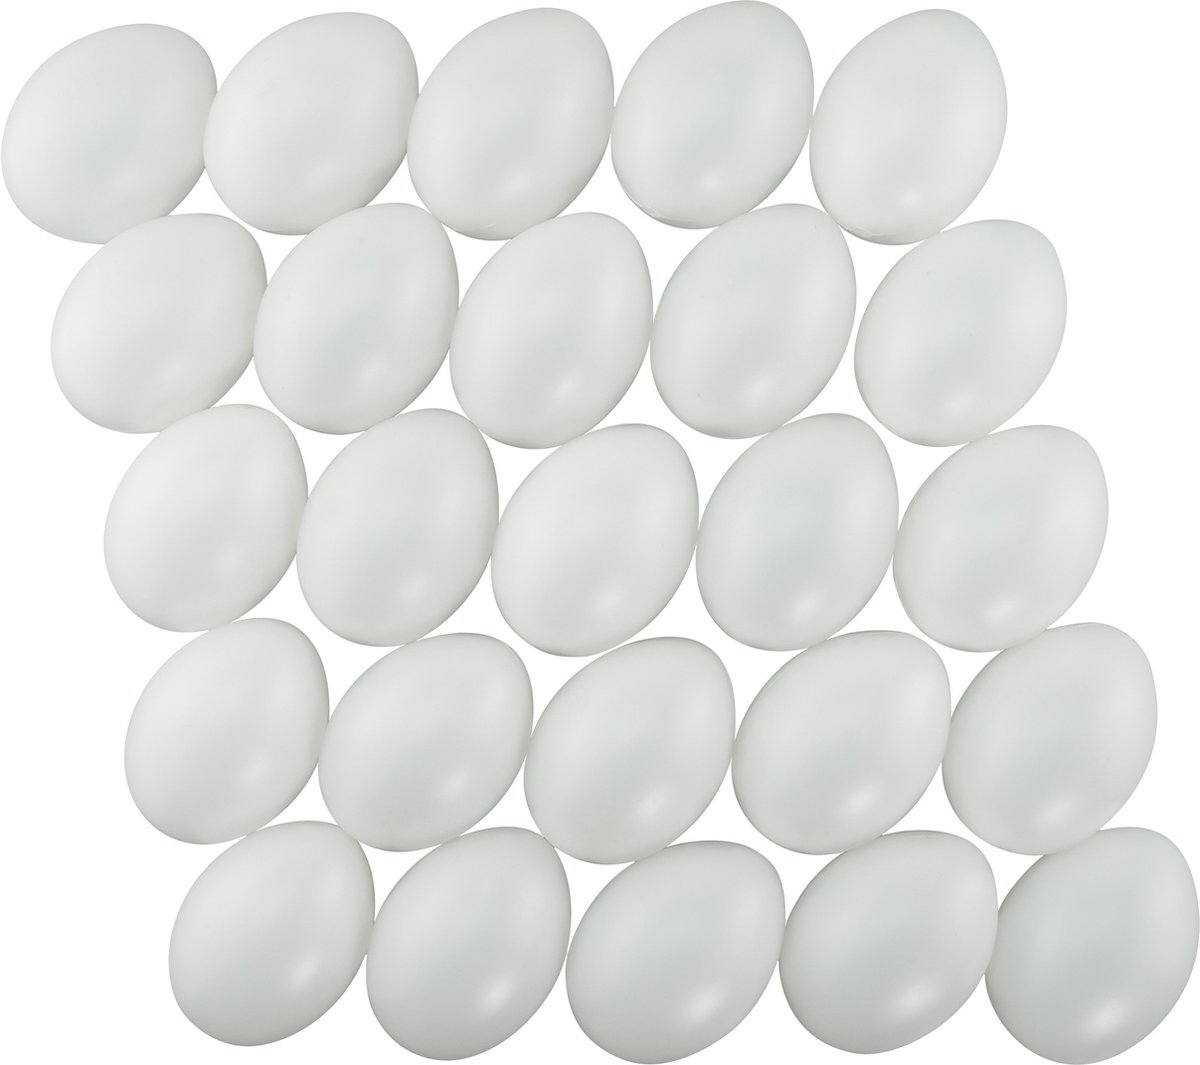 25x stuks witte hobby knutselen eieren van plastic 6 cm - Pasen decoraties - Zelf decoreren - Merkloos